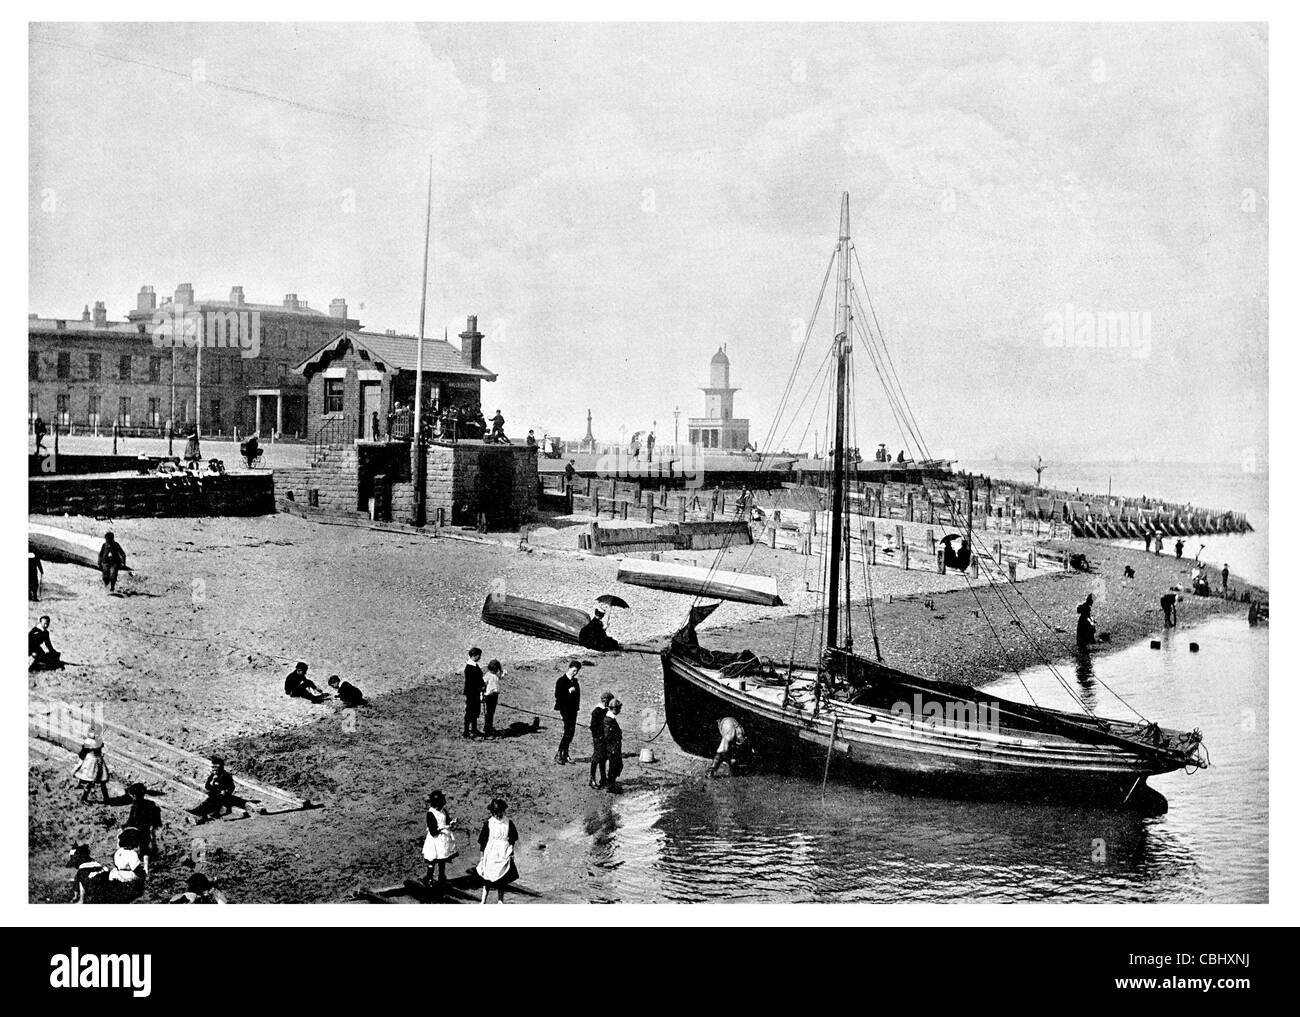 Angleterre Blackpool Lancashire Fleetwood plus grande agglomération de l'époque victorienne de la pêche en haute mer station balnéaire de port de la voile Voile Banque D'Images